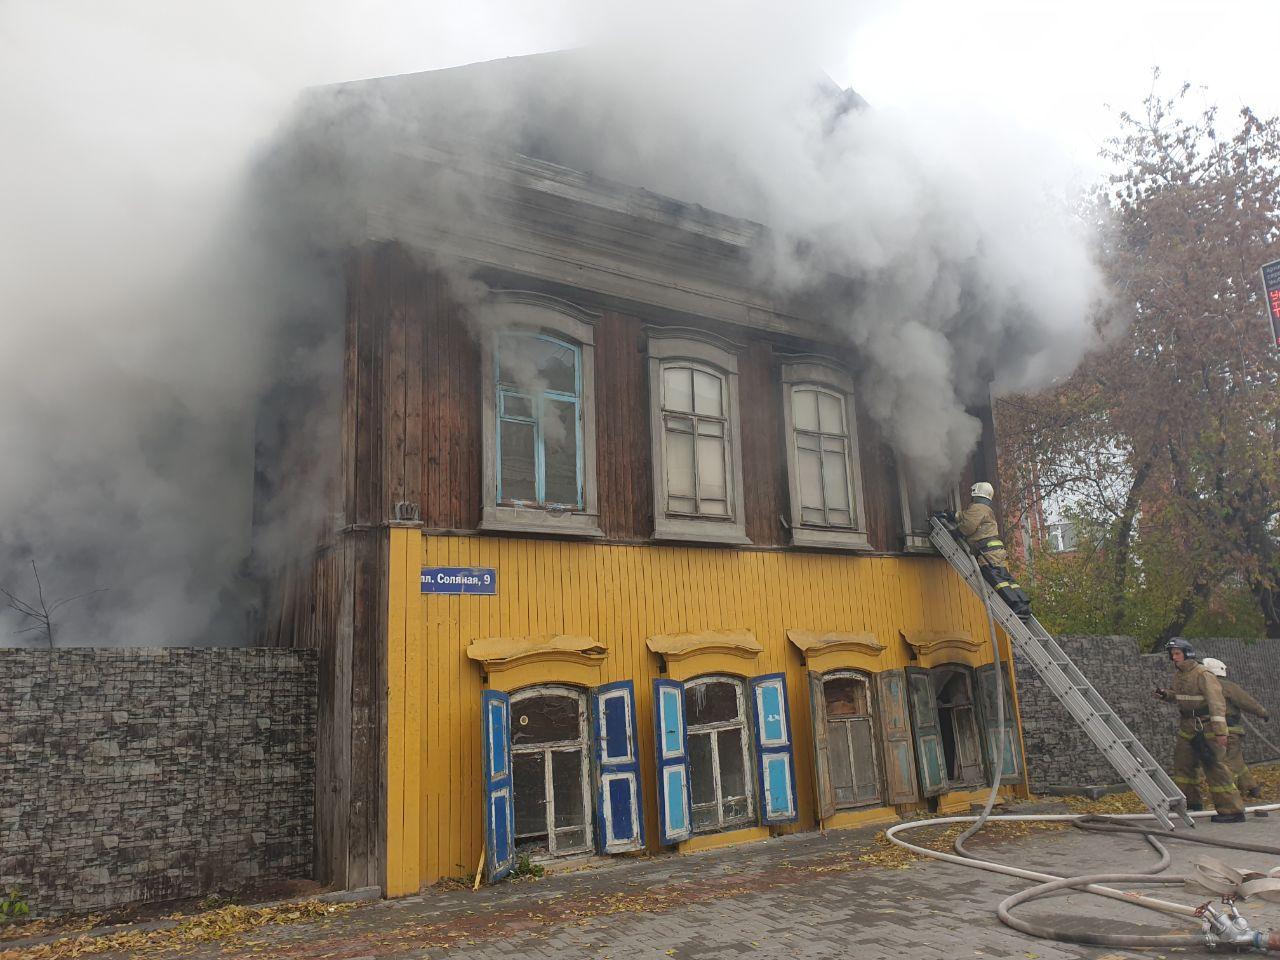 Происшествия, Томские новости, пожар горит огонь в центре Томска деревянный дом загорелся сгорел В Томске загорелся деревянный дом на площади Соляной